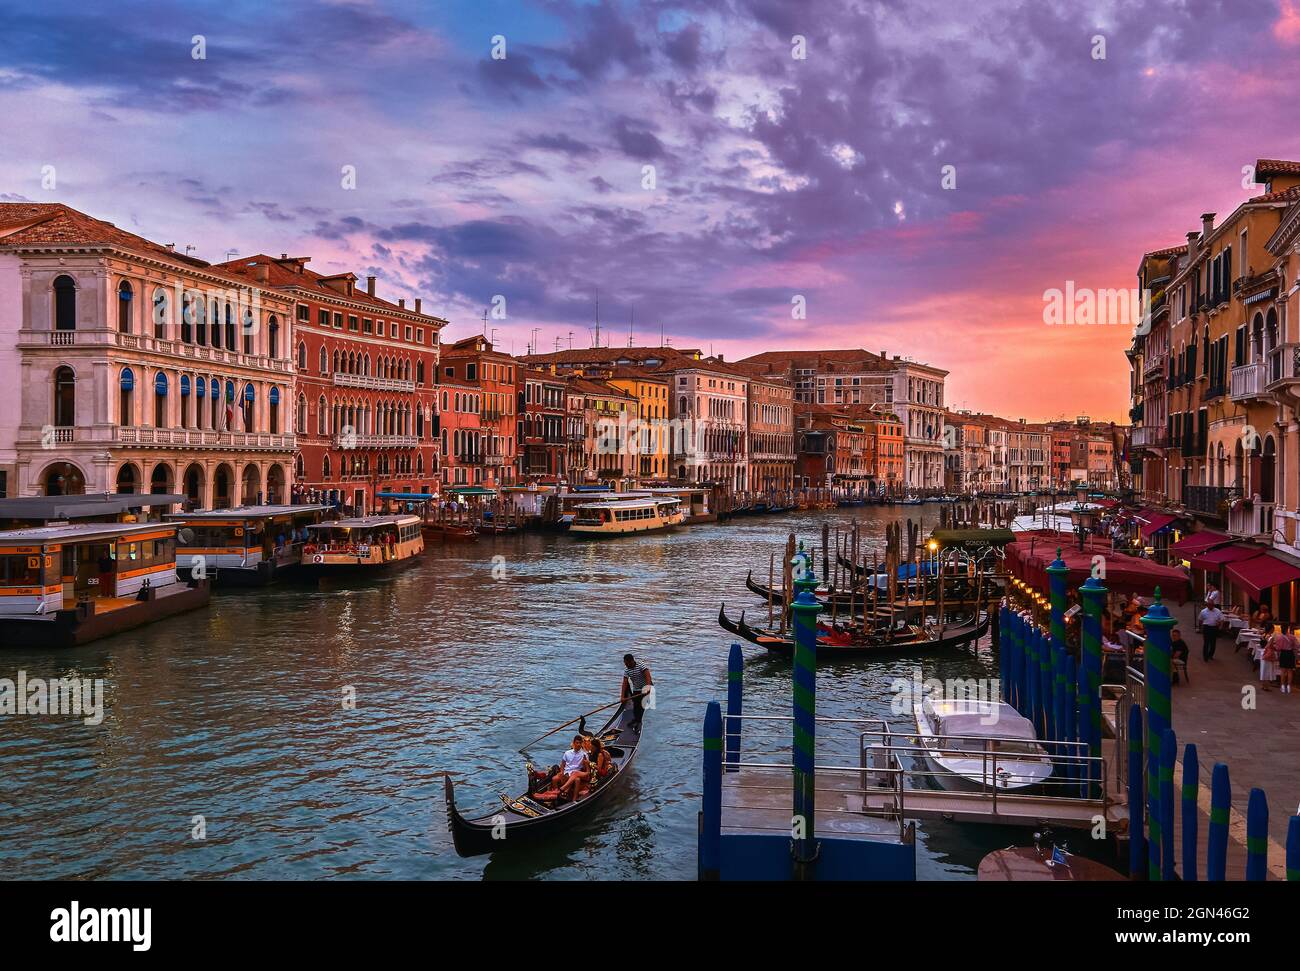 Blick auf den Canale Grande bei Sonnenuntergang, Venedig, Italien. Vaporetto- oder Wasserbus-Station, Boote, Gondeln, die auf Gehwegen festgemacht sind, wunderschöne Sonnenuntergangswolken, UNESCO-Weltkulturerbe Stockfoto